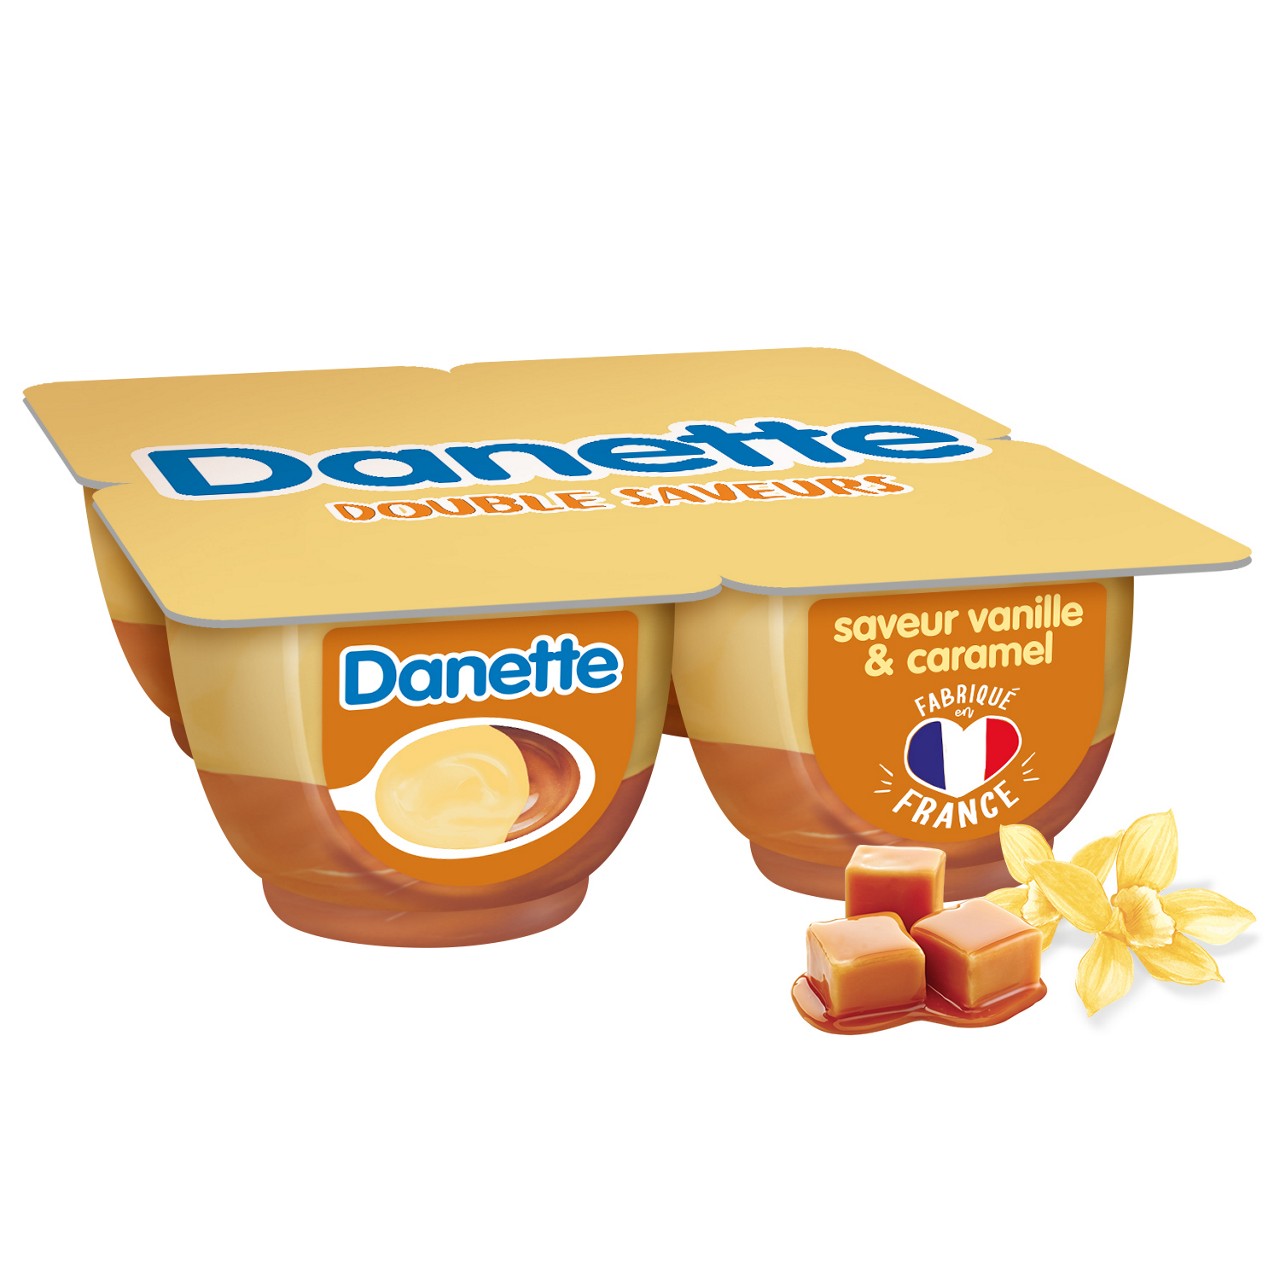 Danette double saveurs vanille & caramel